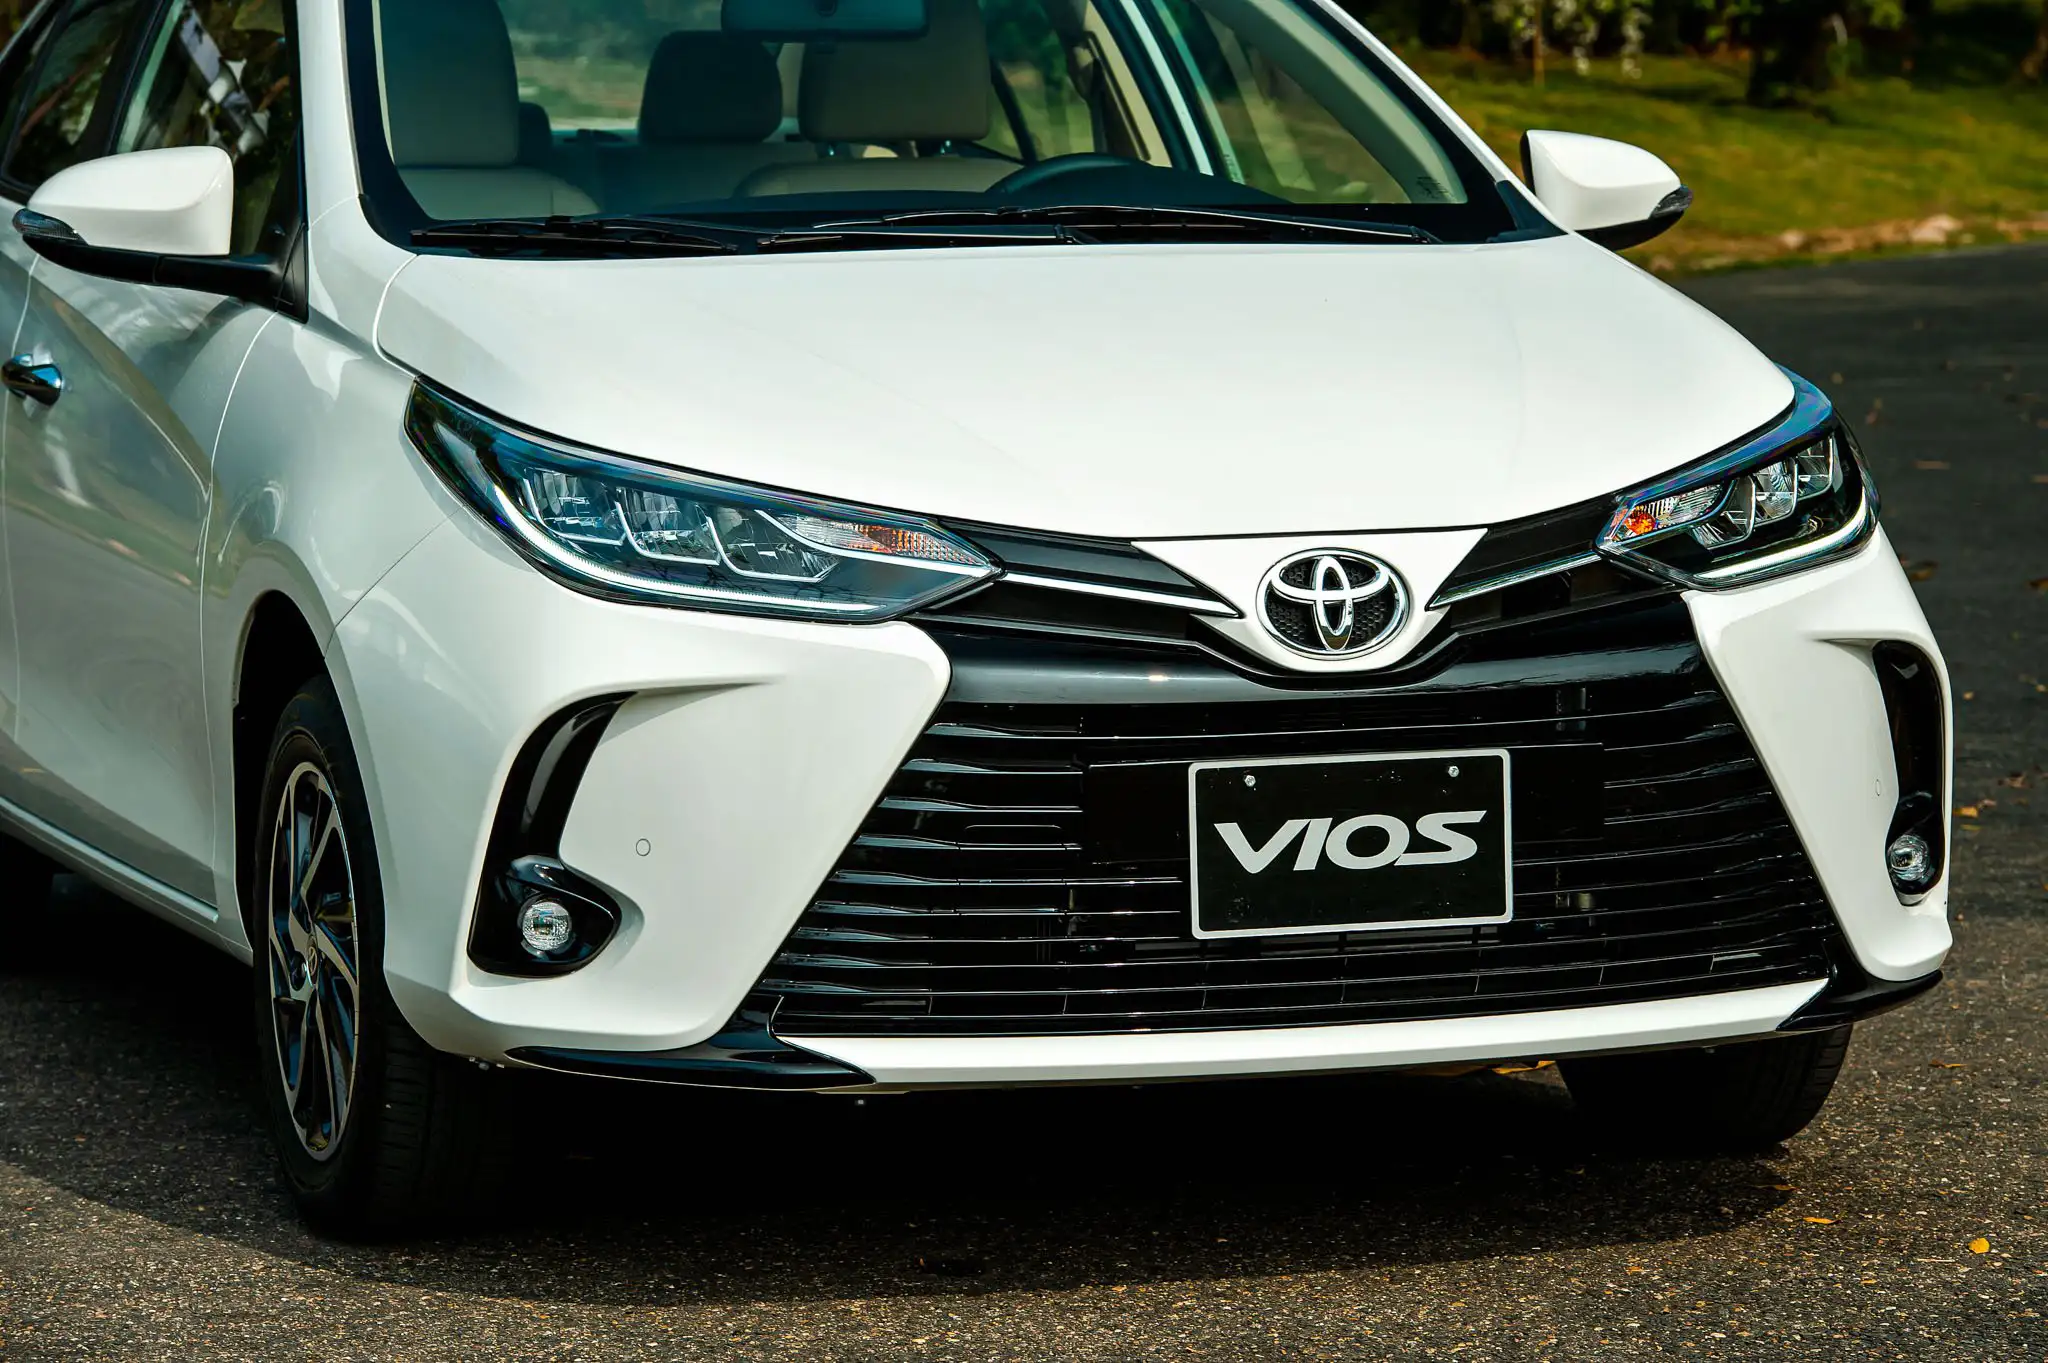 Toyota Vios đem đến diện mạo bề thế từ góc nhìn chính diện nhờ cụm đèn trước sắc sảo, hệ thống lưới tản nhiệt cỡ lớn hình bậc thang trải dài kết hợp hài hòa cùng đèn sương mù hai bên.